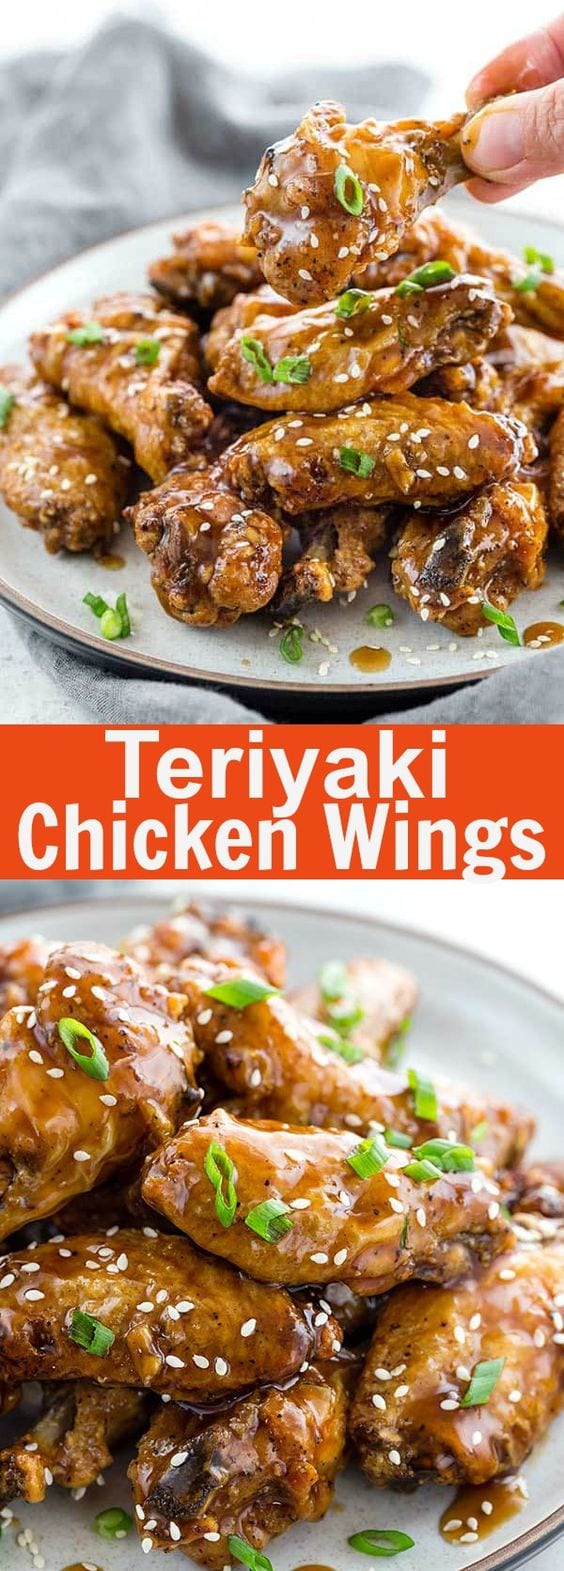 Ailes de poulet Teriyaki - ailes de poulet cuites au four avec sauce teriyaki sucrée et salée collante.  Ces ailes plaisent à la foule et sont parfaites pour les soirées de semaine chargées |  rasamalaysia.com